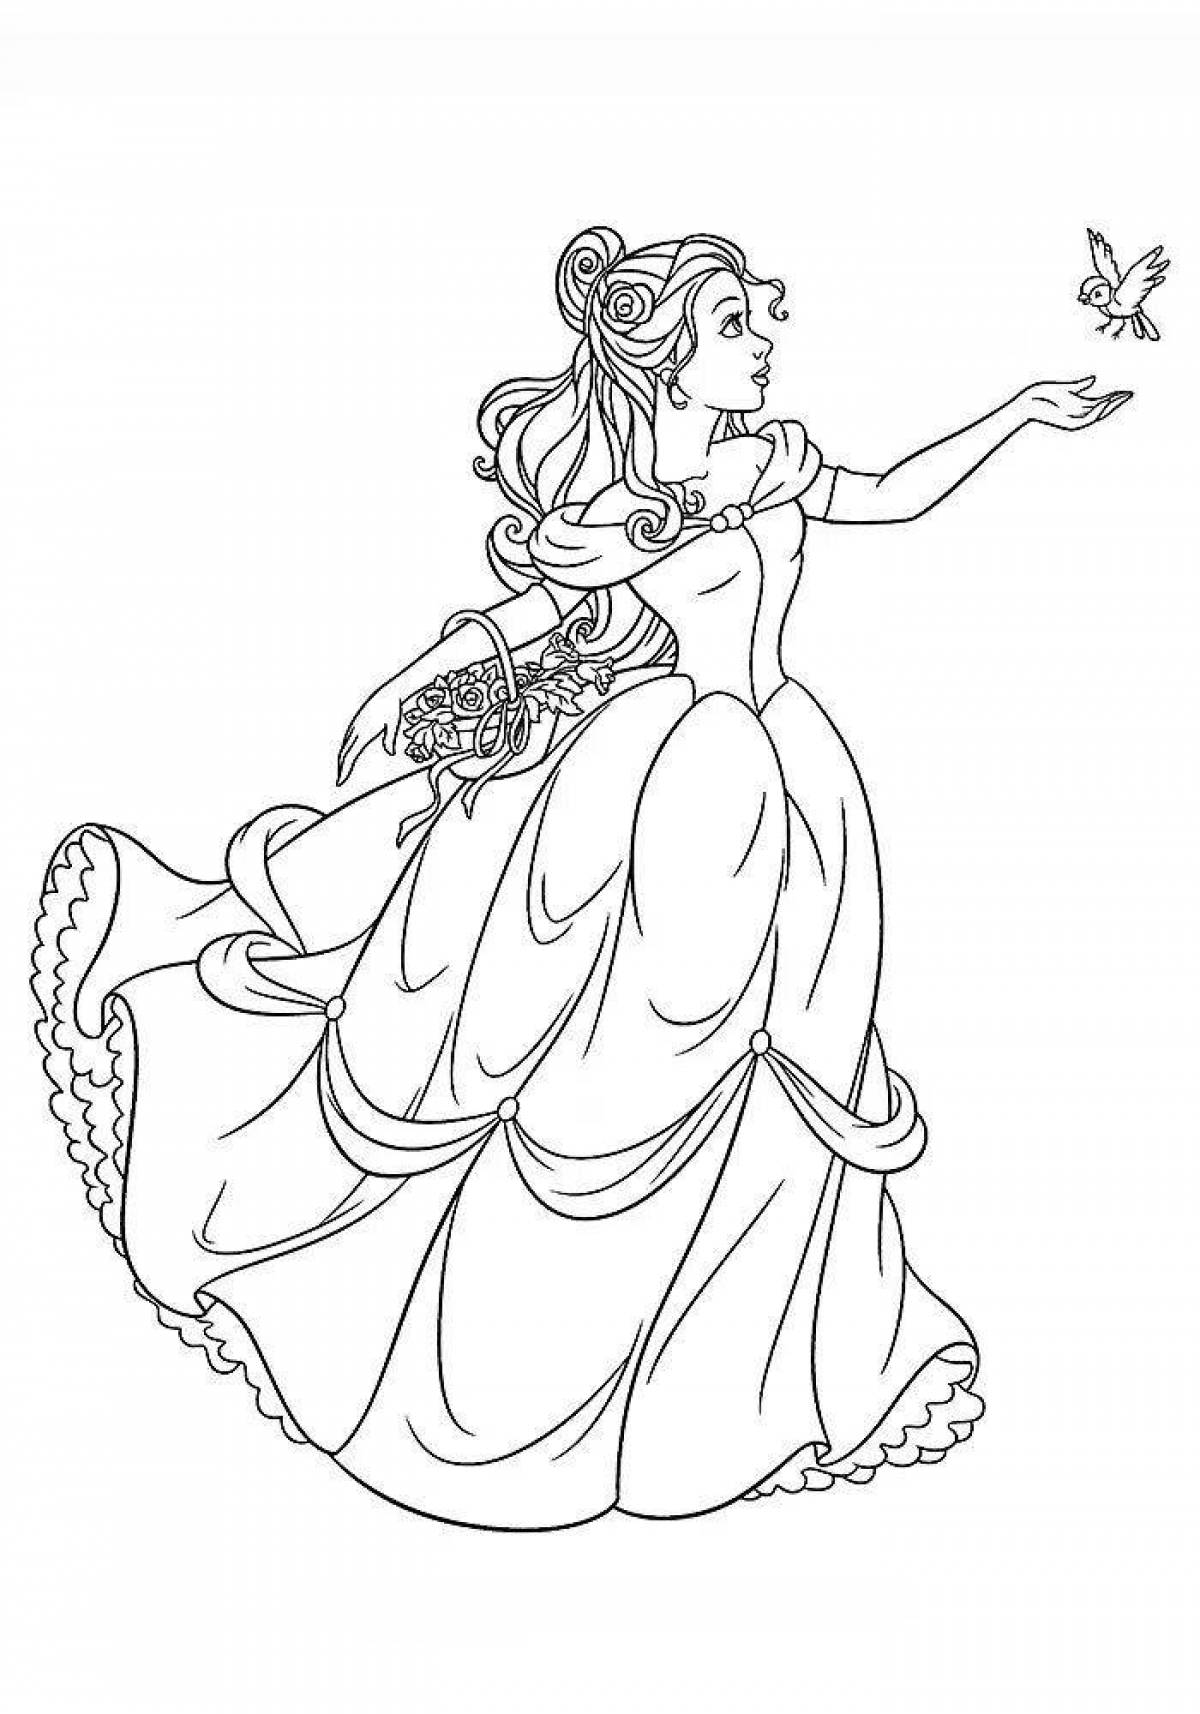 Princess belle live coloring